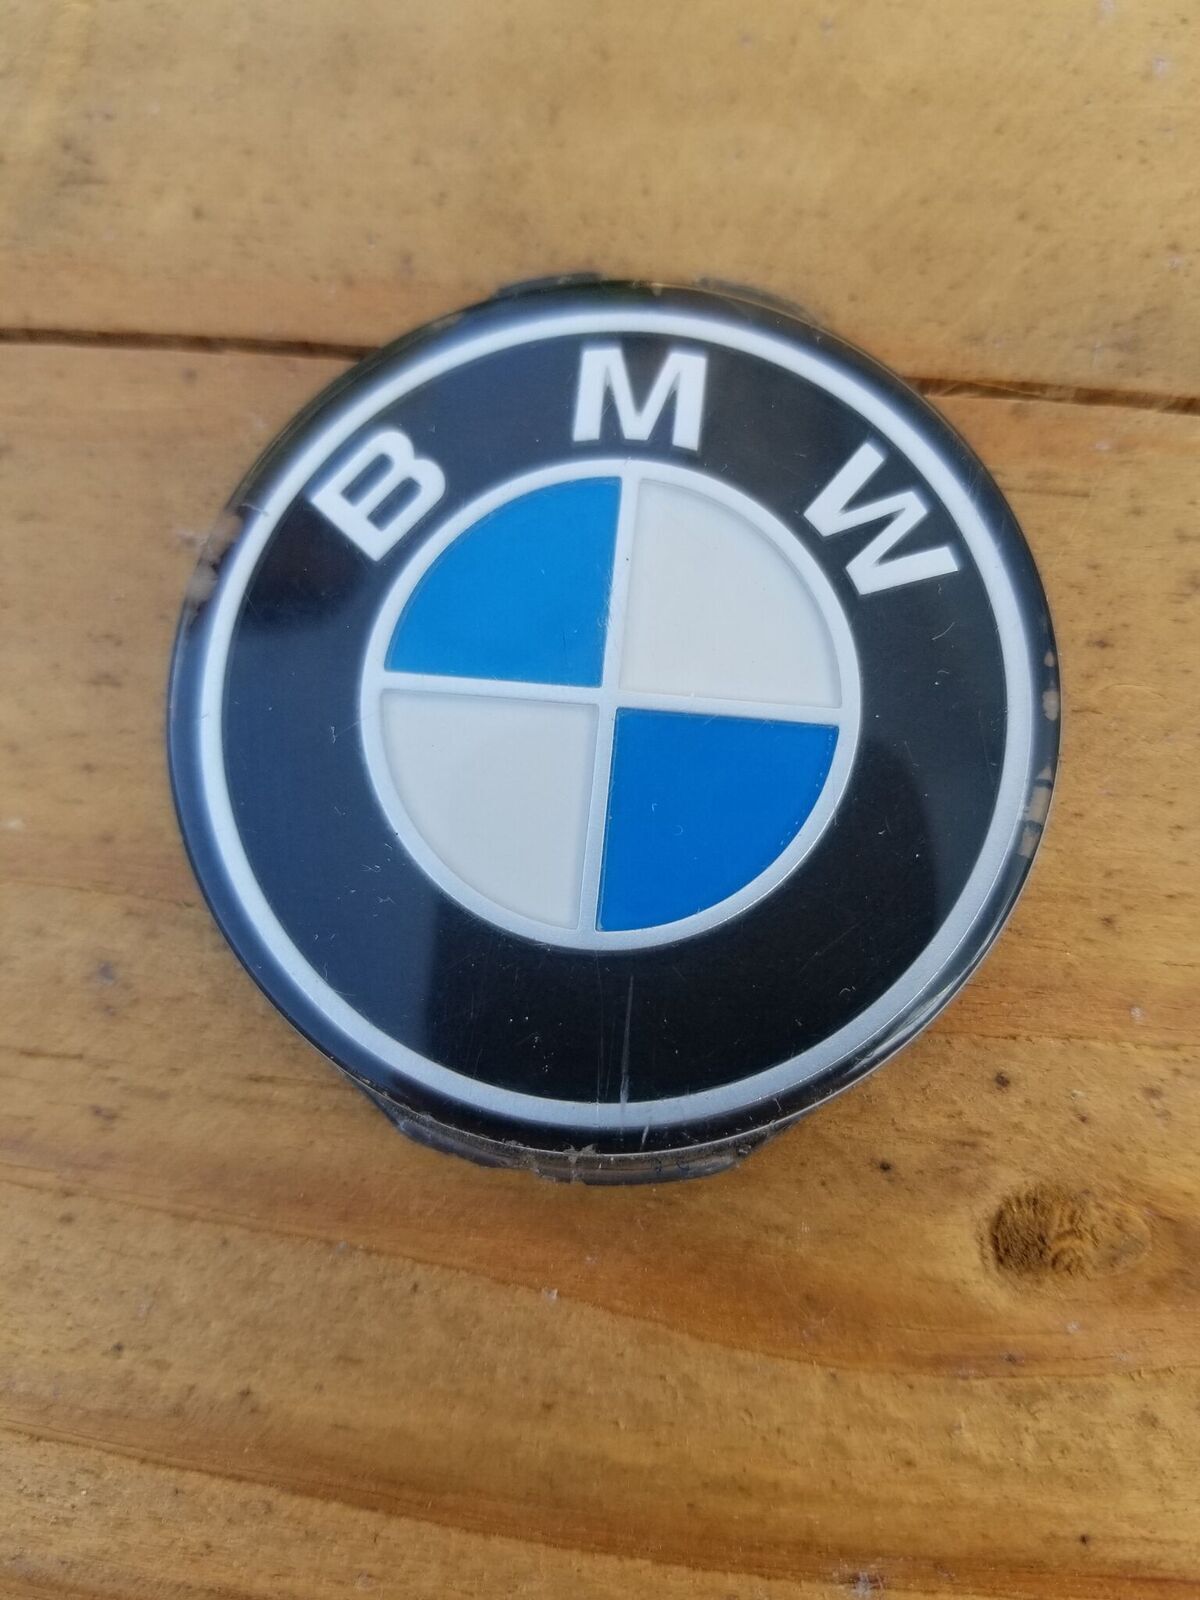 OEM BMW e30 e28 e24 mtech 1 steering wheel emblem 325i 325is 325ix 318i 318is m3